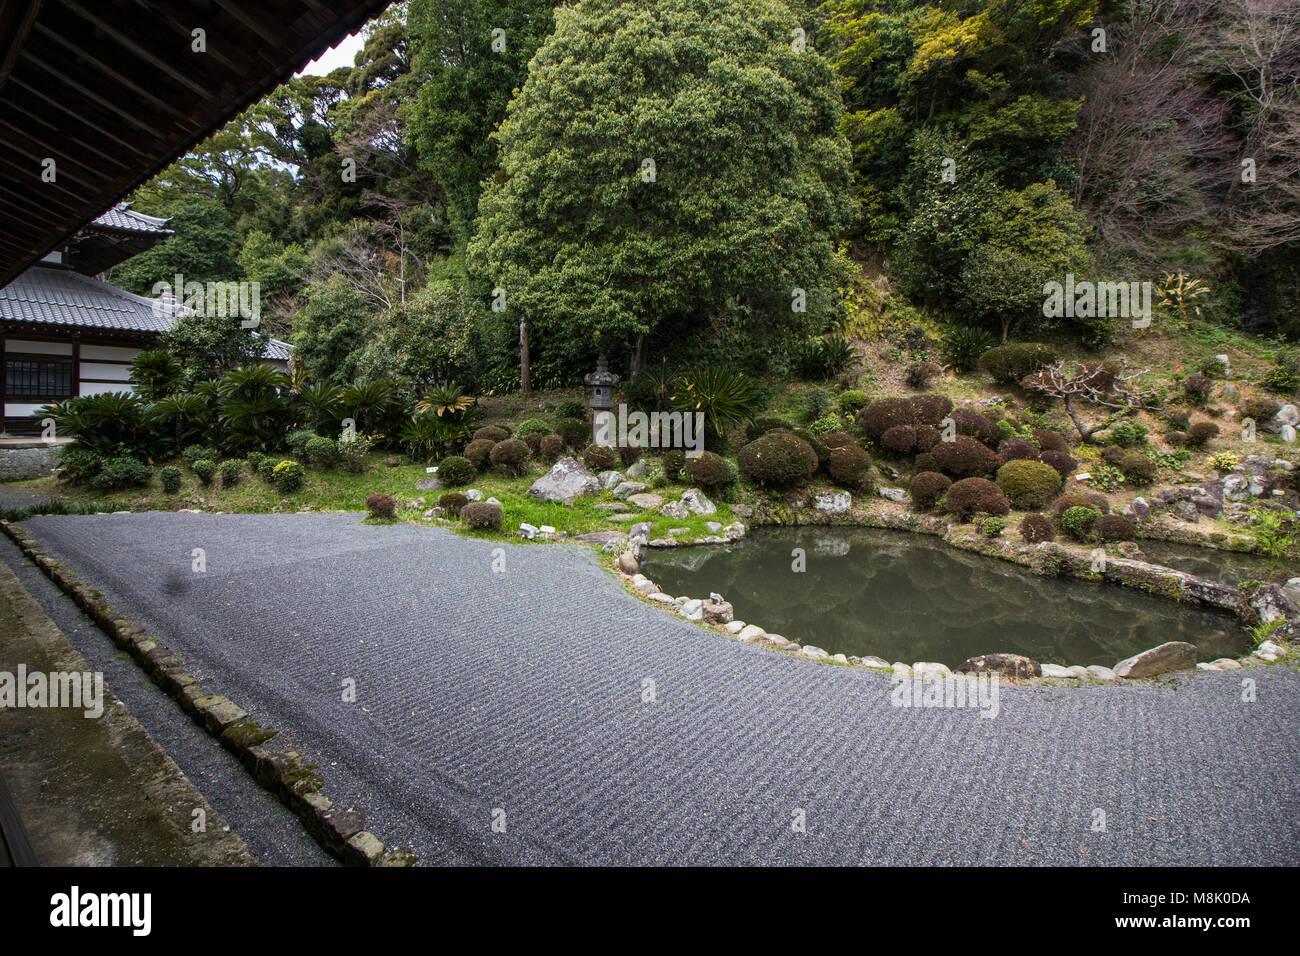 Garten - Seikenji seikenji Tempel ist ein buddhistischer Tempel der Rinzai Sekte in Okitsu Shizuoka. Seikenjiâ €™ â € ™ s Ursprung begann als Ergebnis seiner Lage al Stockfoto